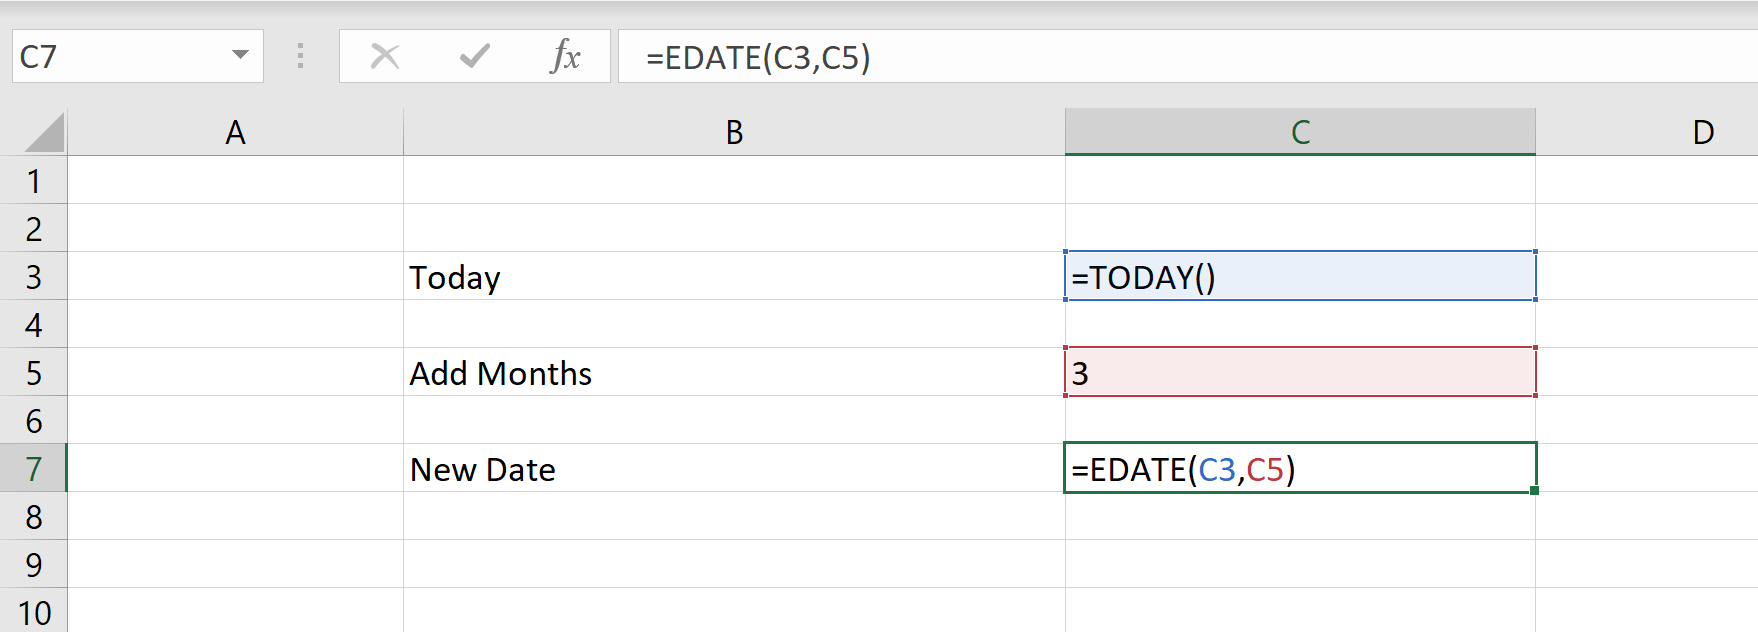 Hogyan adjunk egy hónapot egy dátumhoz az Excelben?